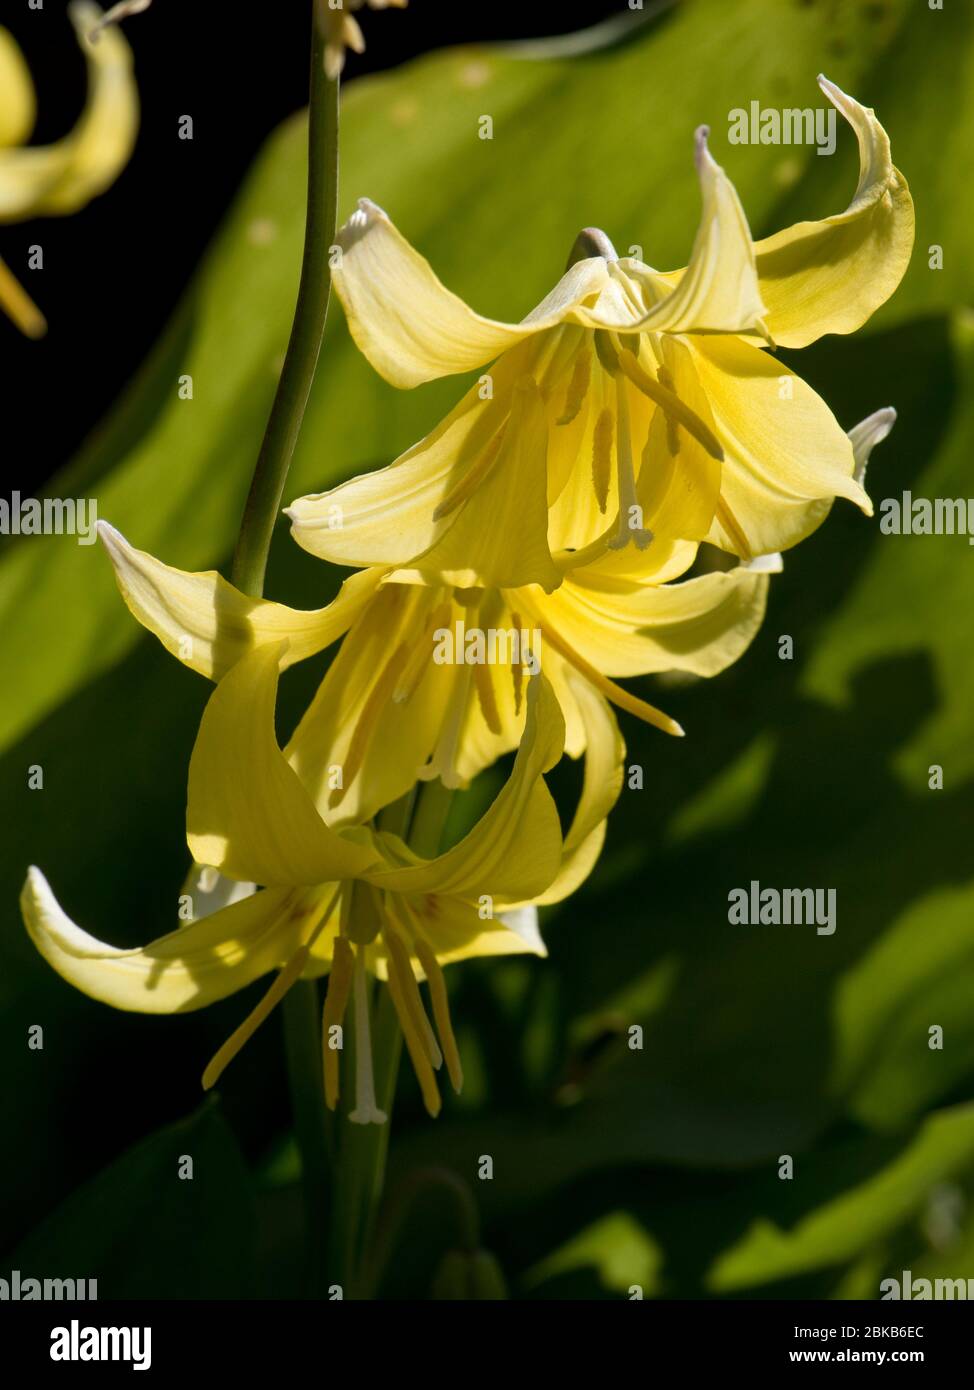 Fleur jaune récursive de couleur jaune, suspendue au soleil de printemps après-midi, avril, à la violette ou au lys fauve (Erythronium 'Pagoda') Banque D'Images